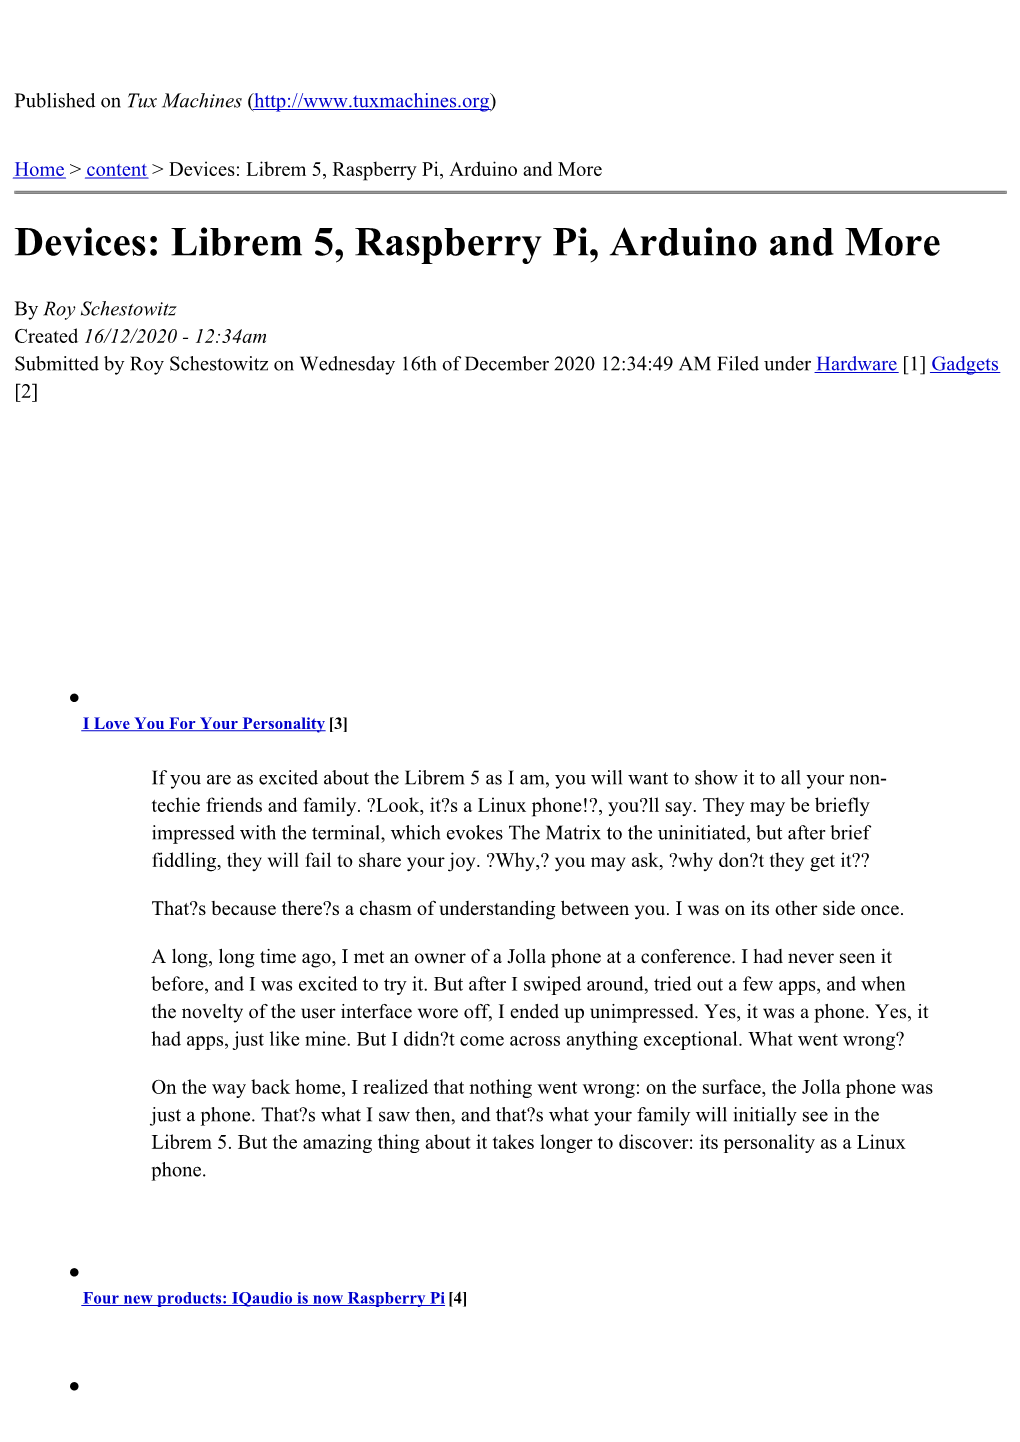 Devices: Librem 5, Raspberry Pi, Arduino and More